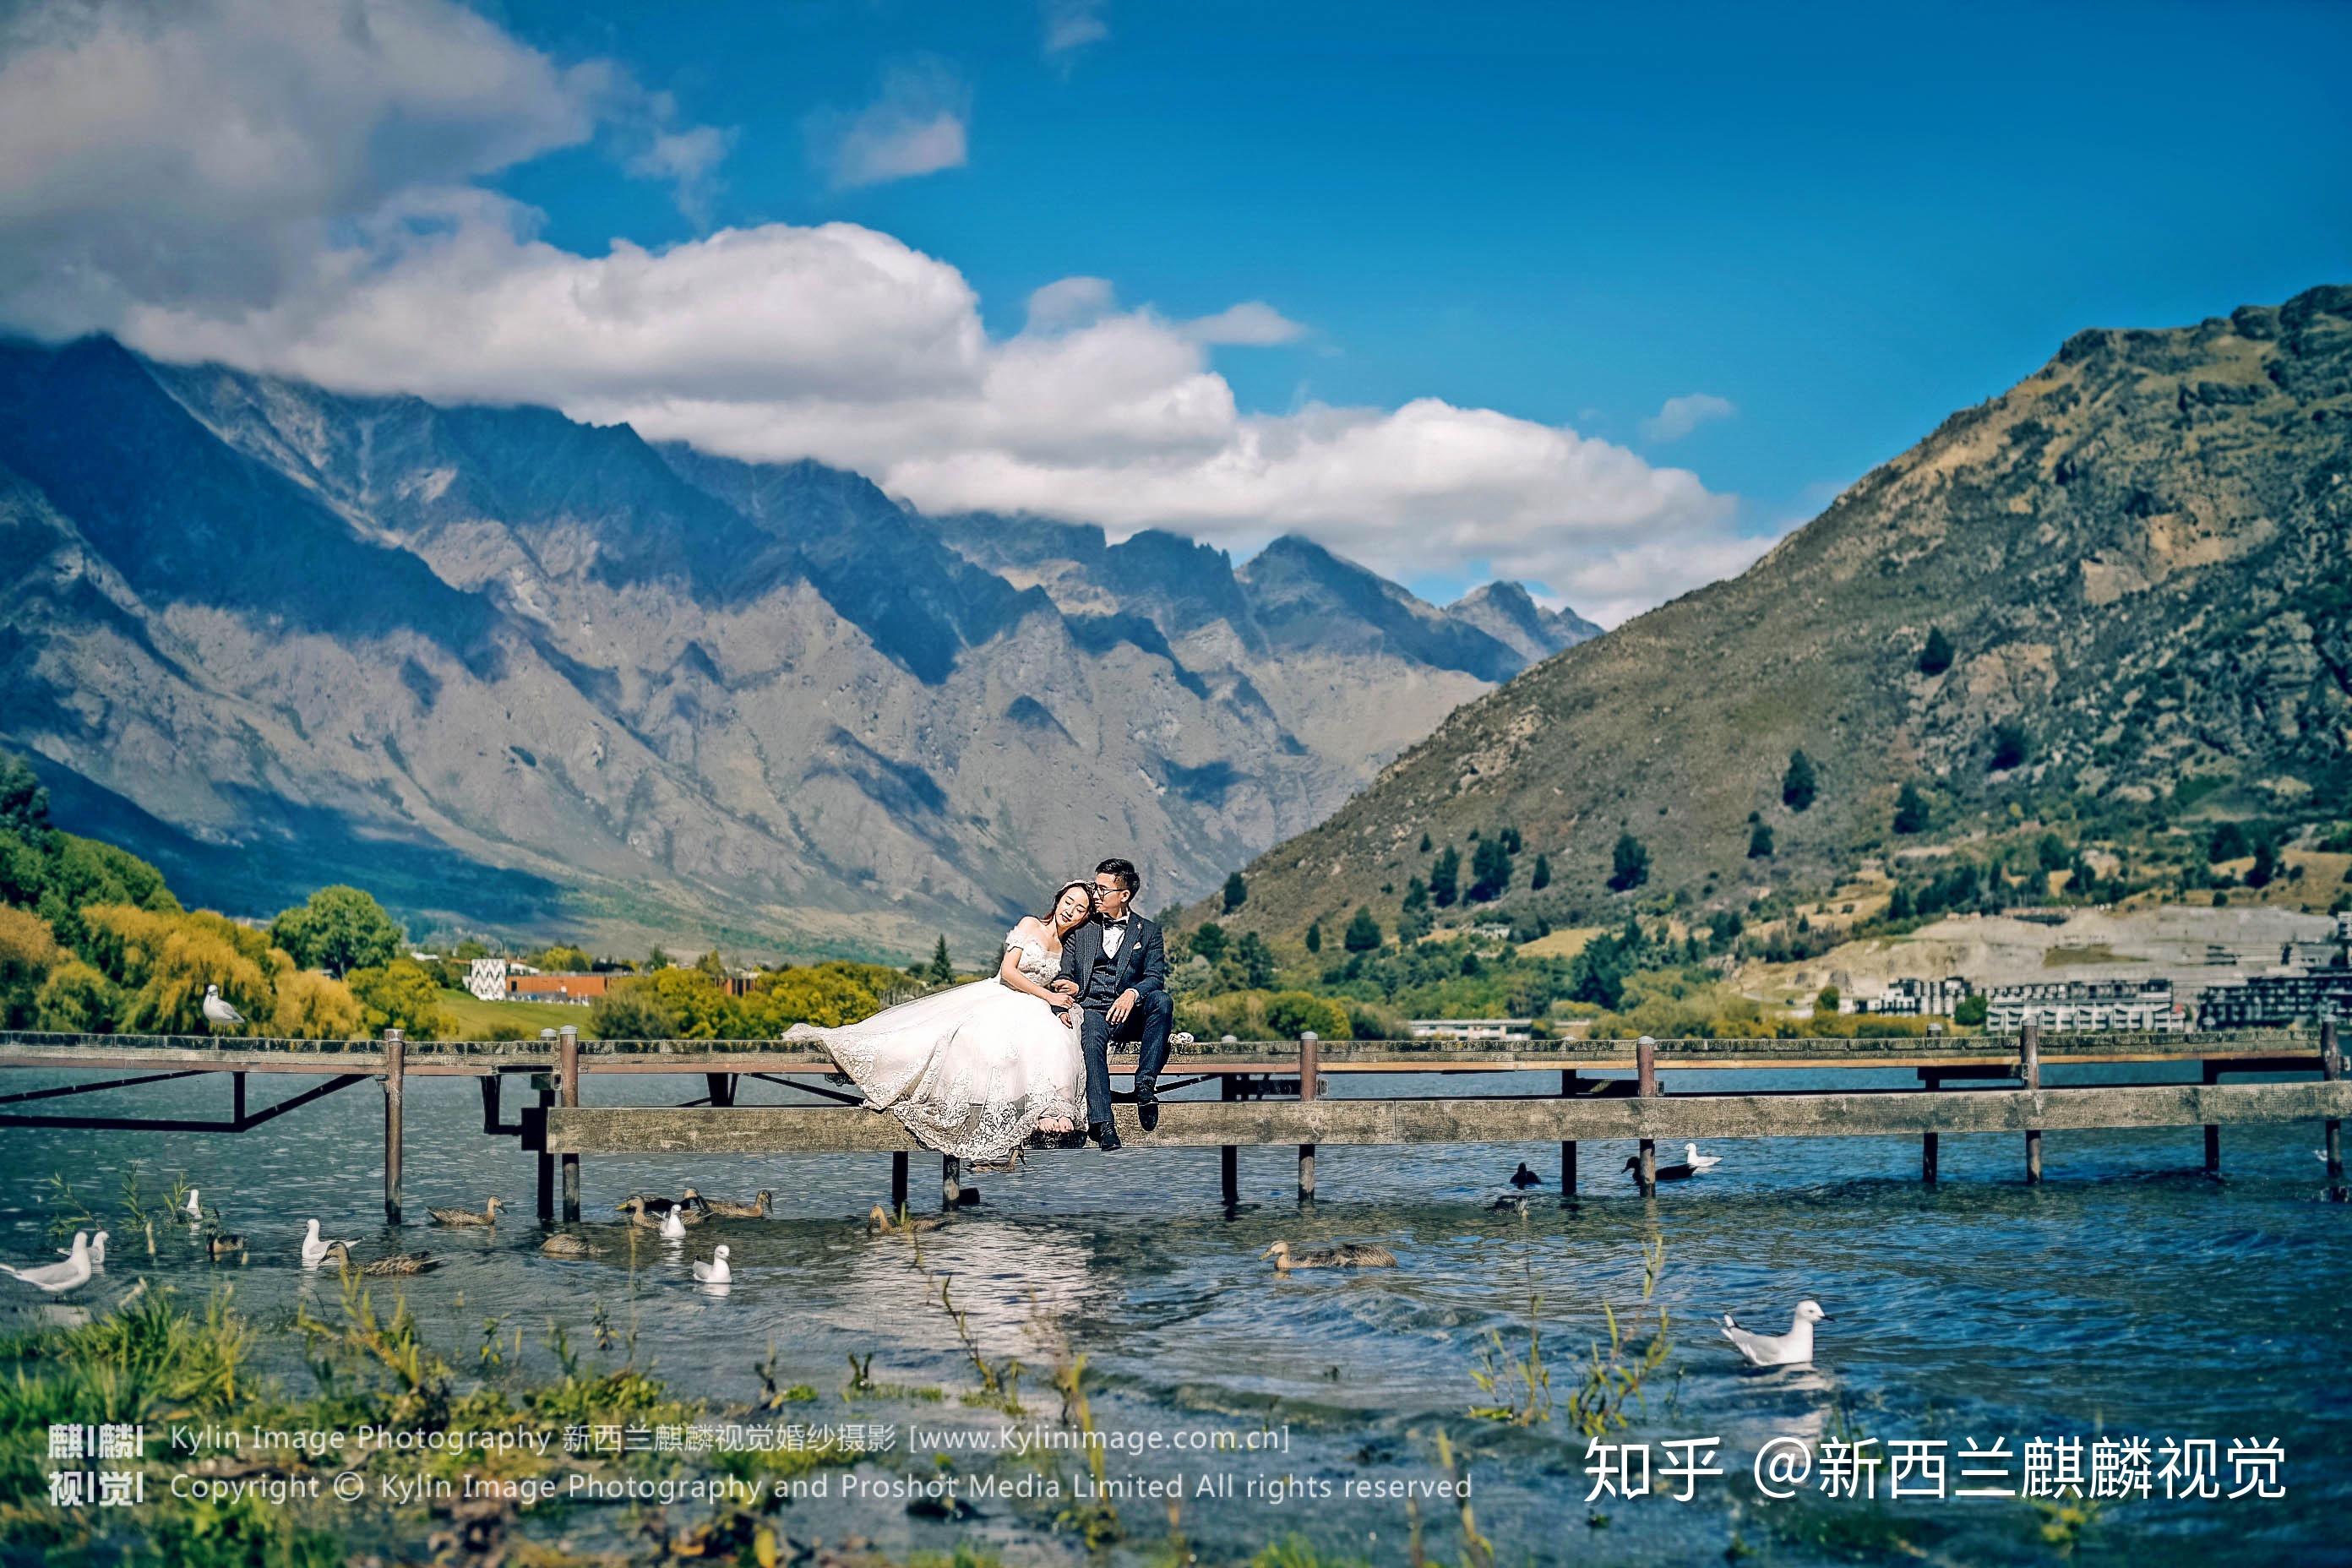 想去新西兰拍婚纱照,请问什么时候去比较好? 